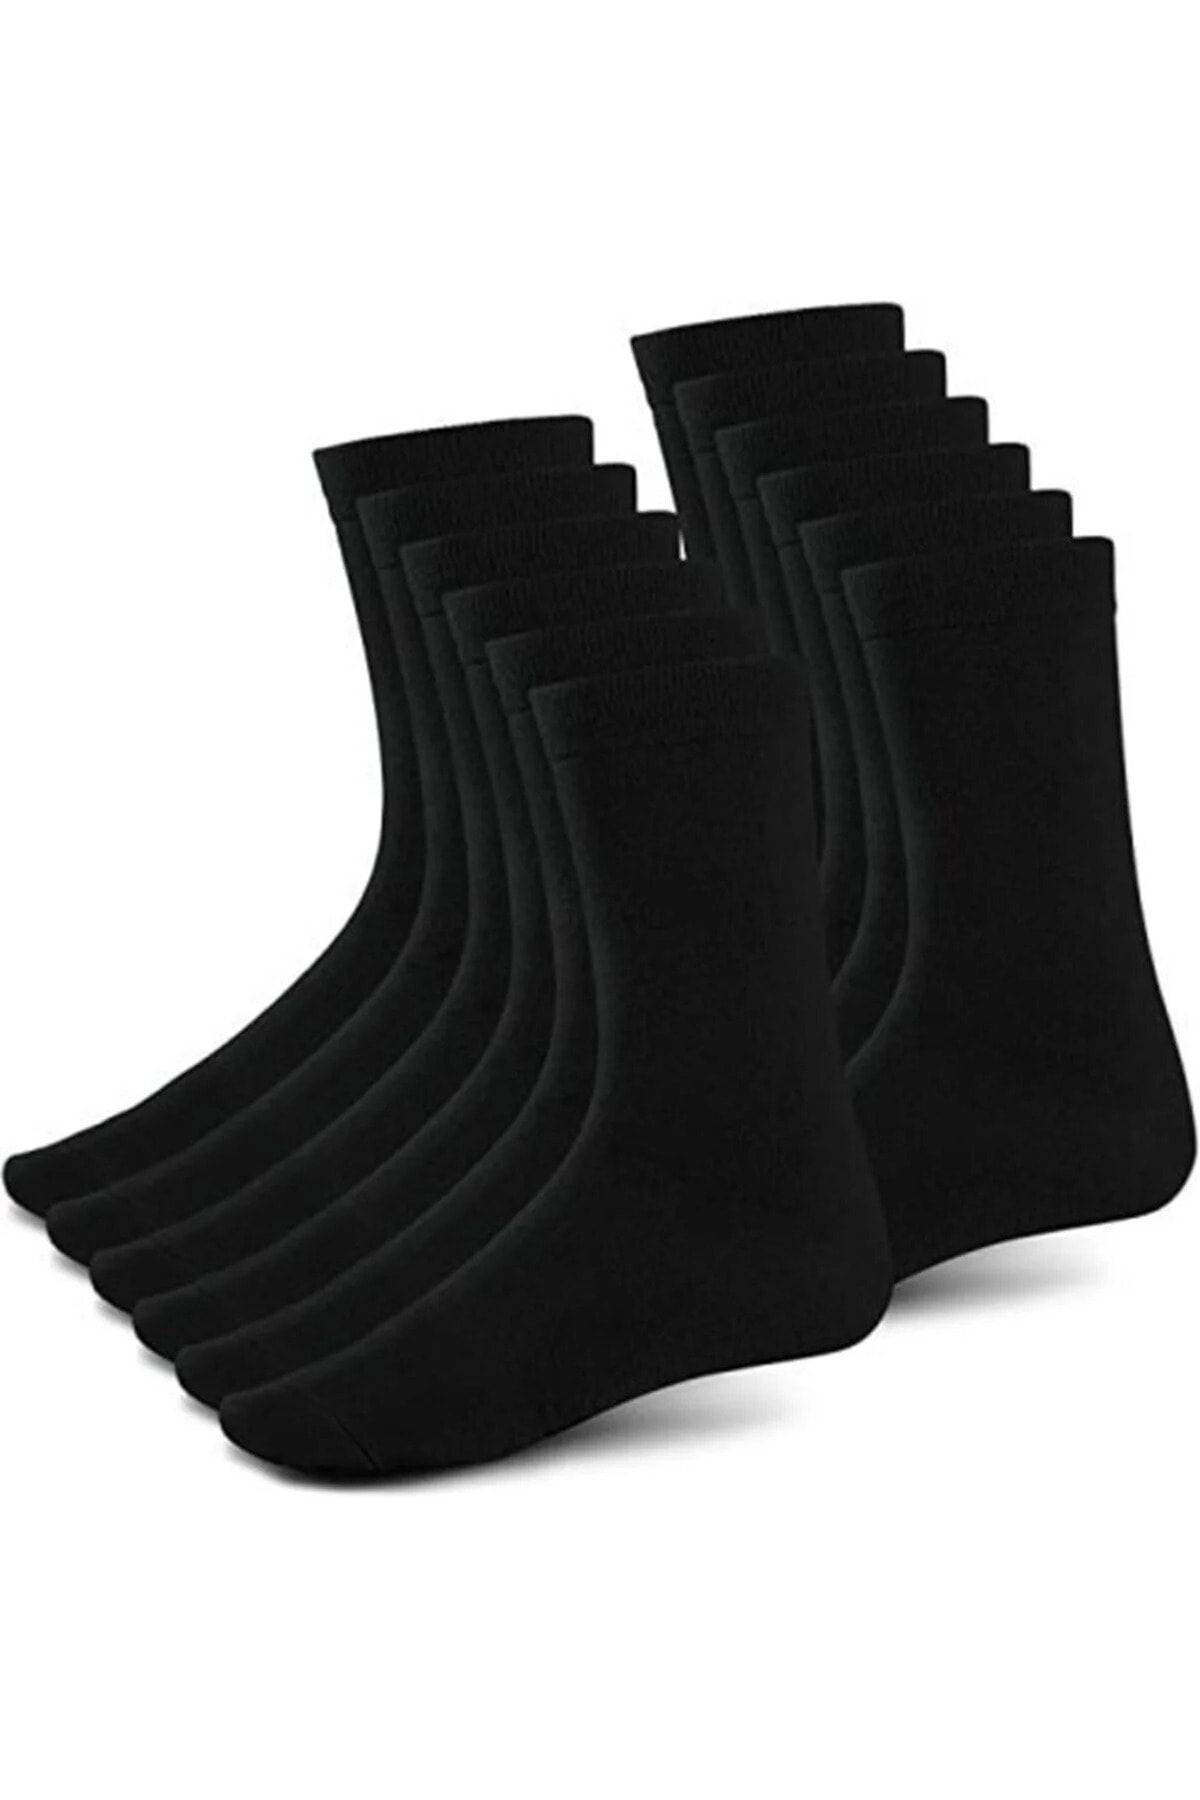 MODA KALİYANA Soket 12 Çift Siyah Uzun Erkek Çorap